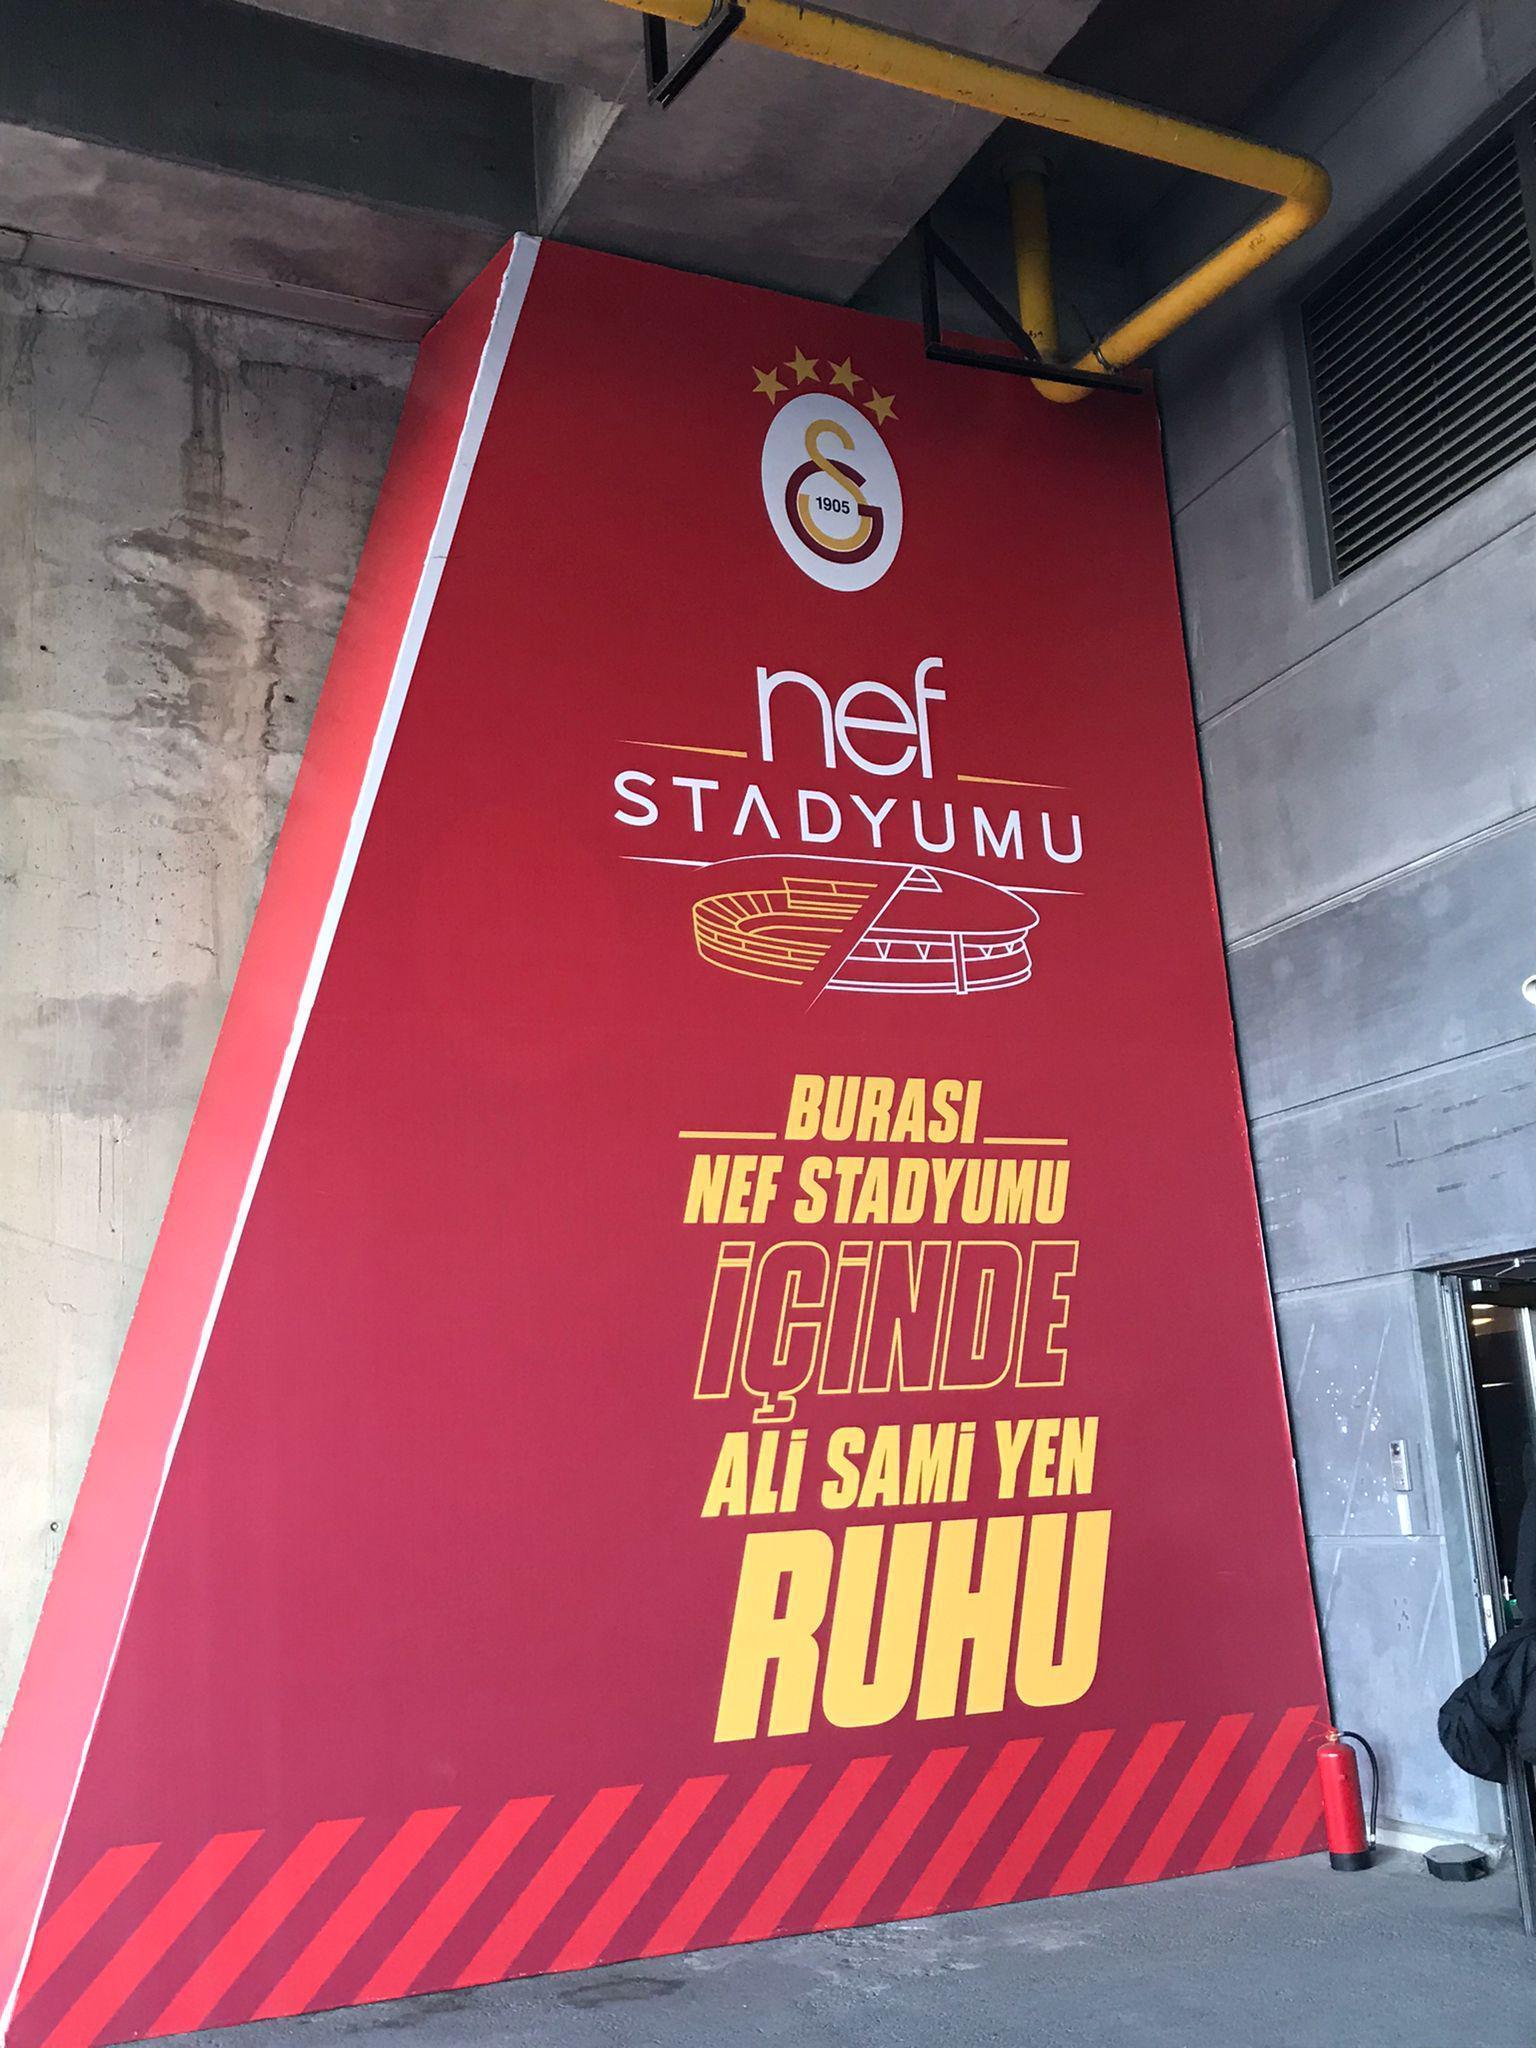 Erden Timur: Galatasaray Stadına isim sponsorluğu gündeme geldiğinde bile müthiş heyecanlandık